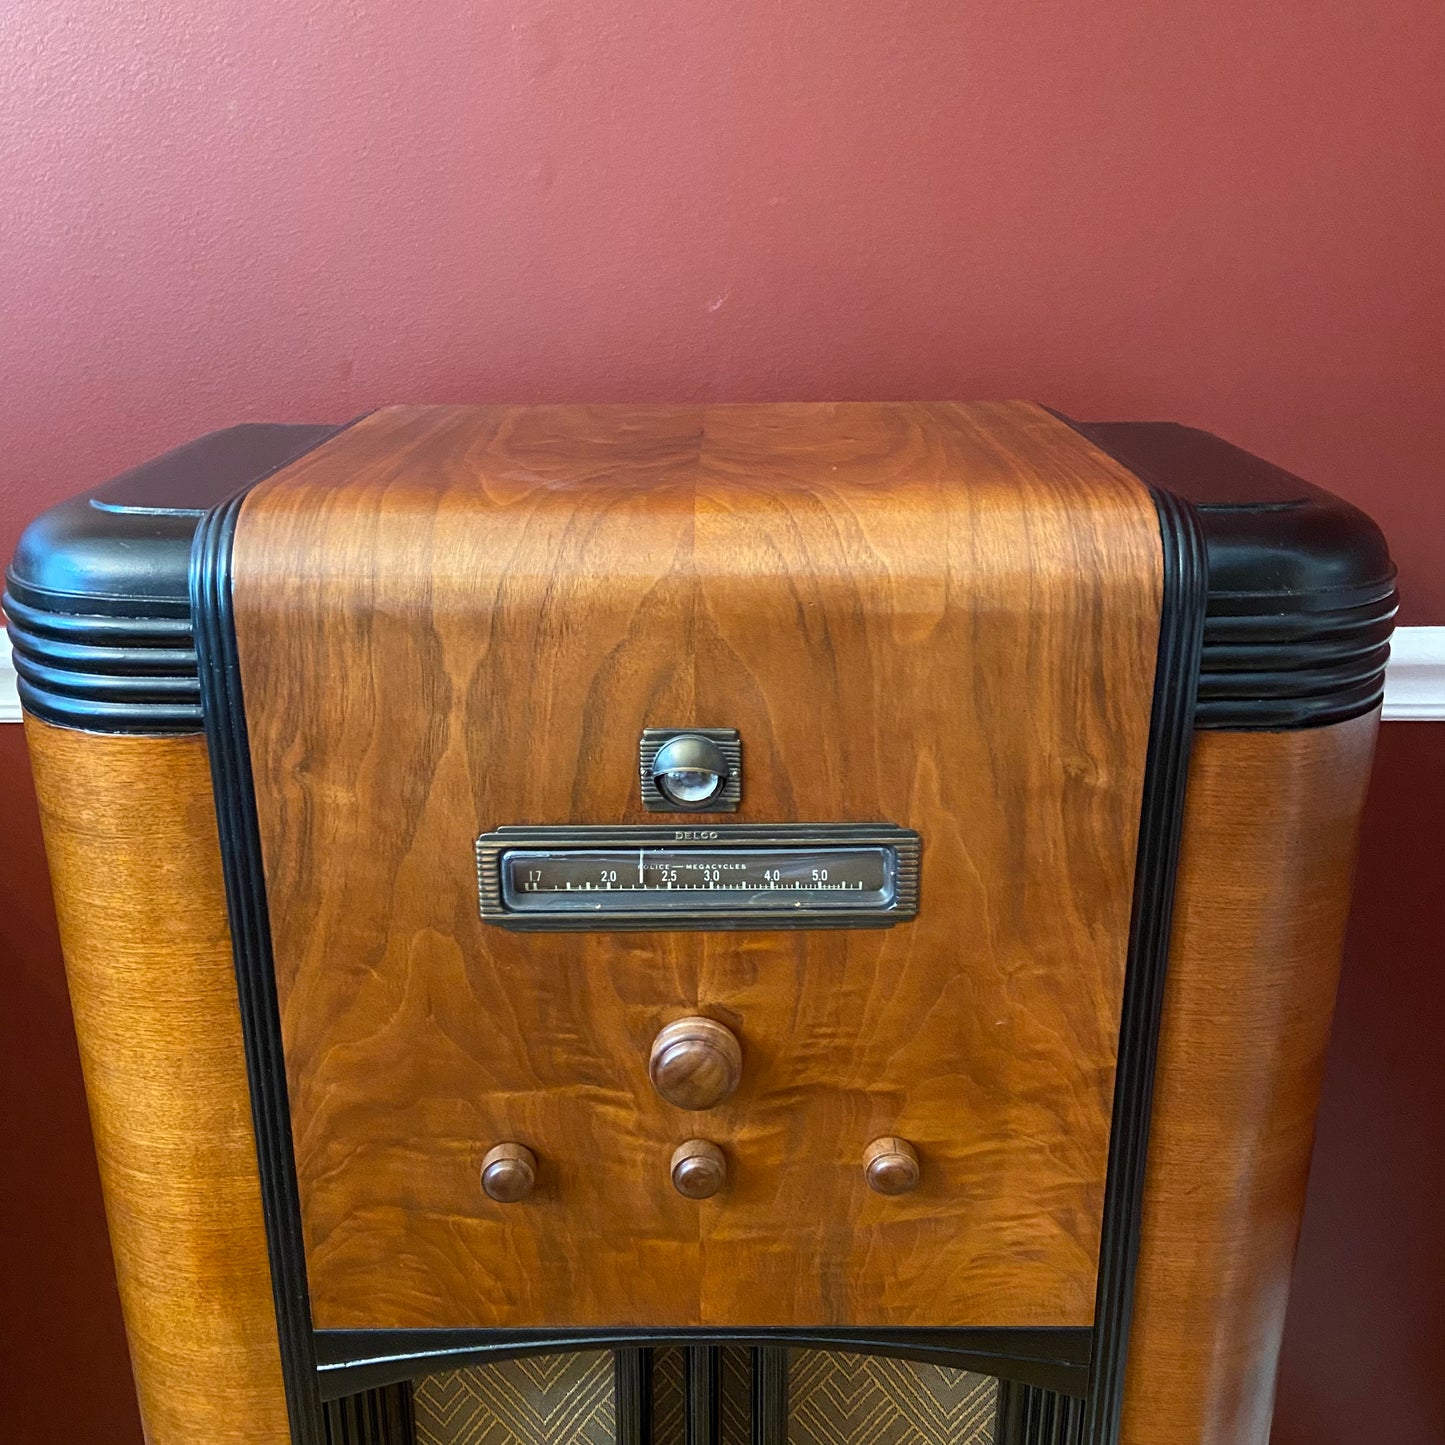 AC Delco Radios 1937 -  R-1131